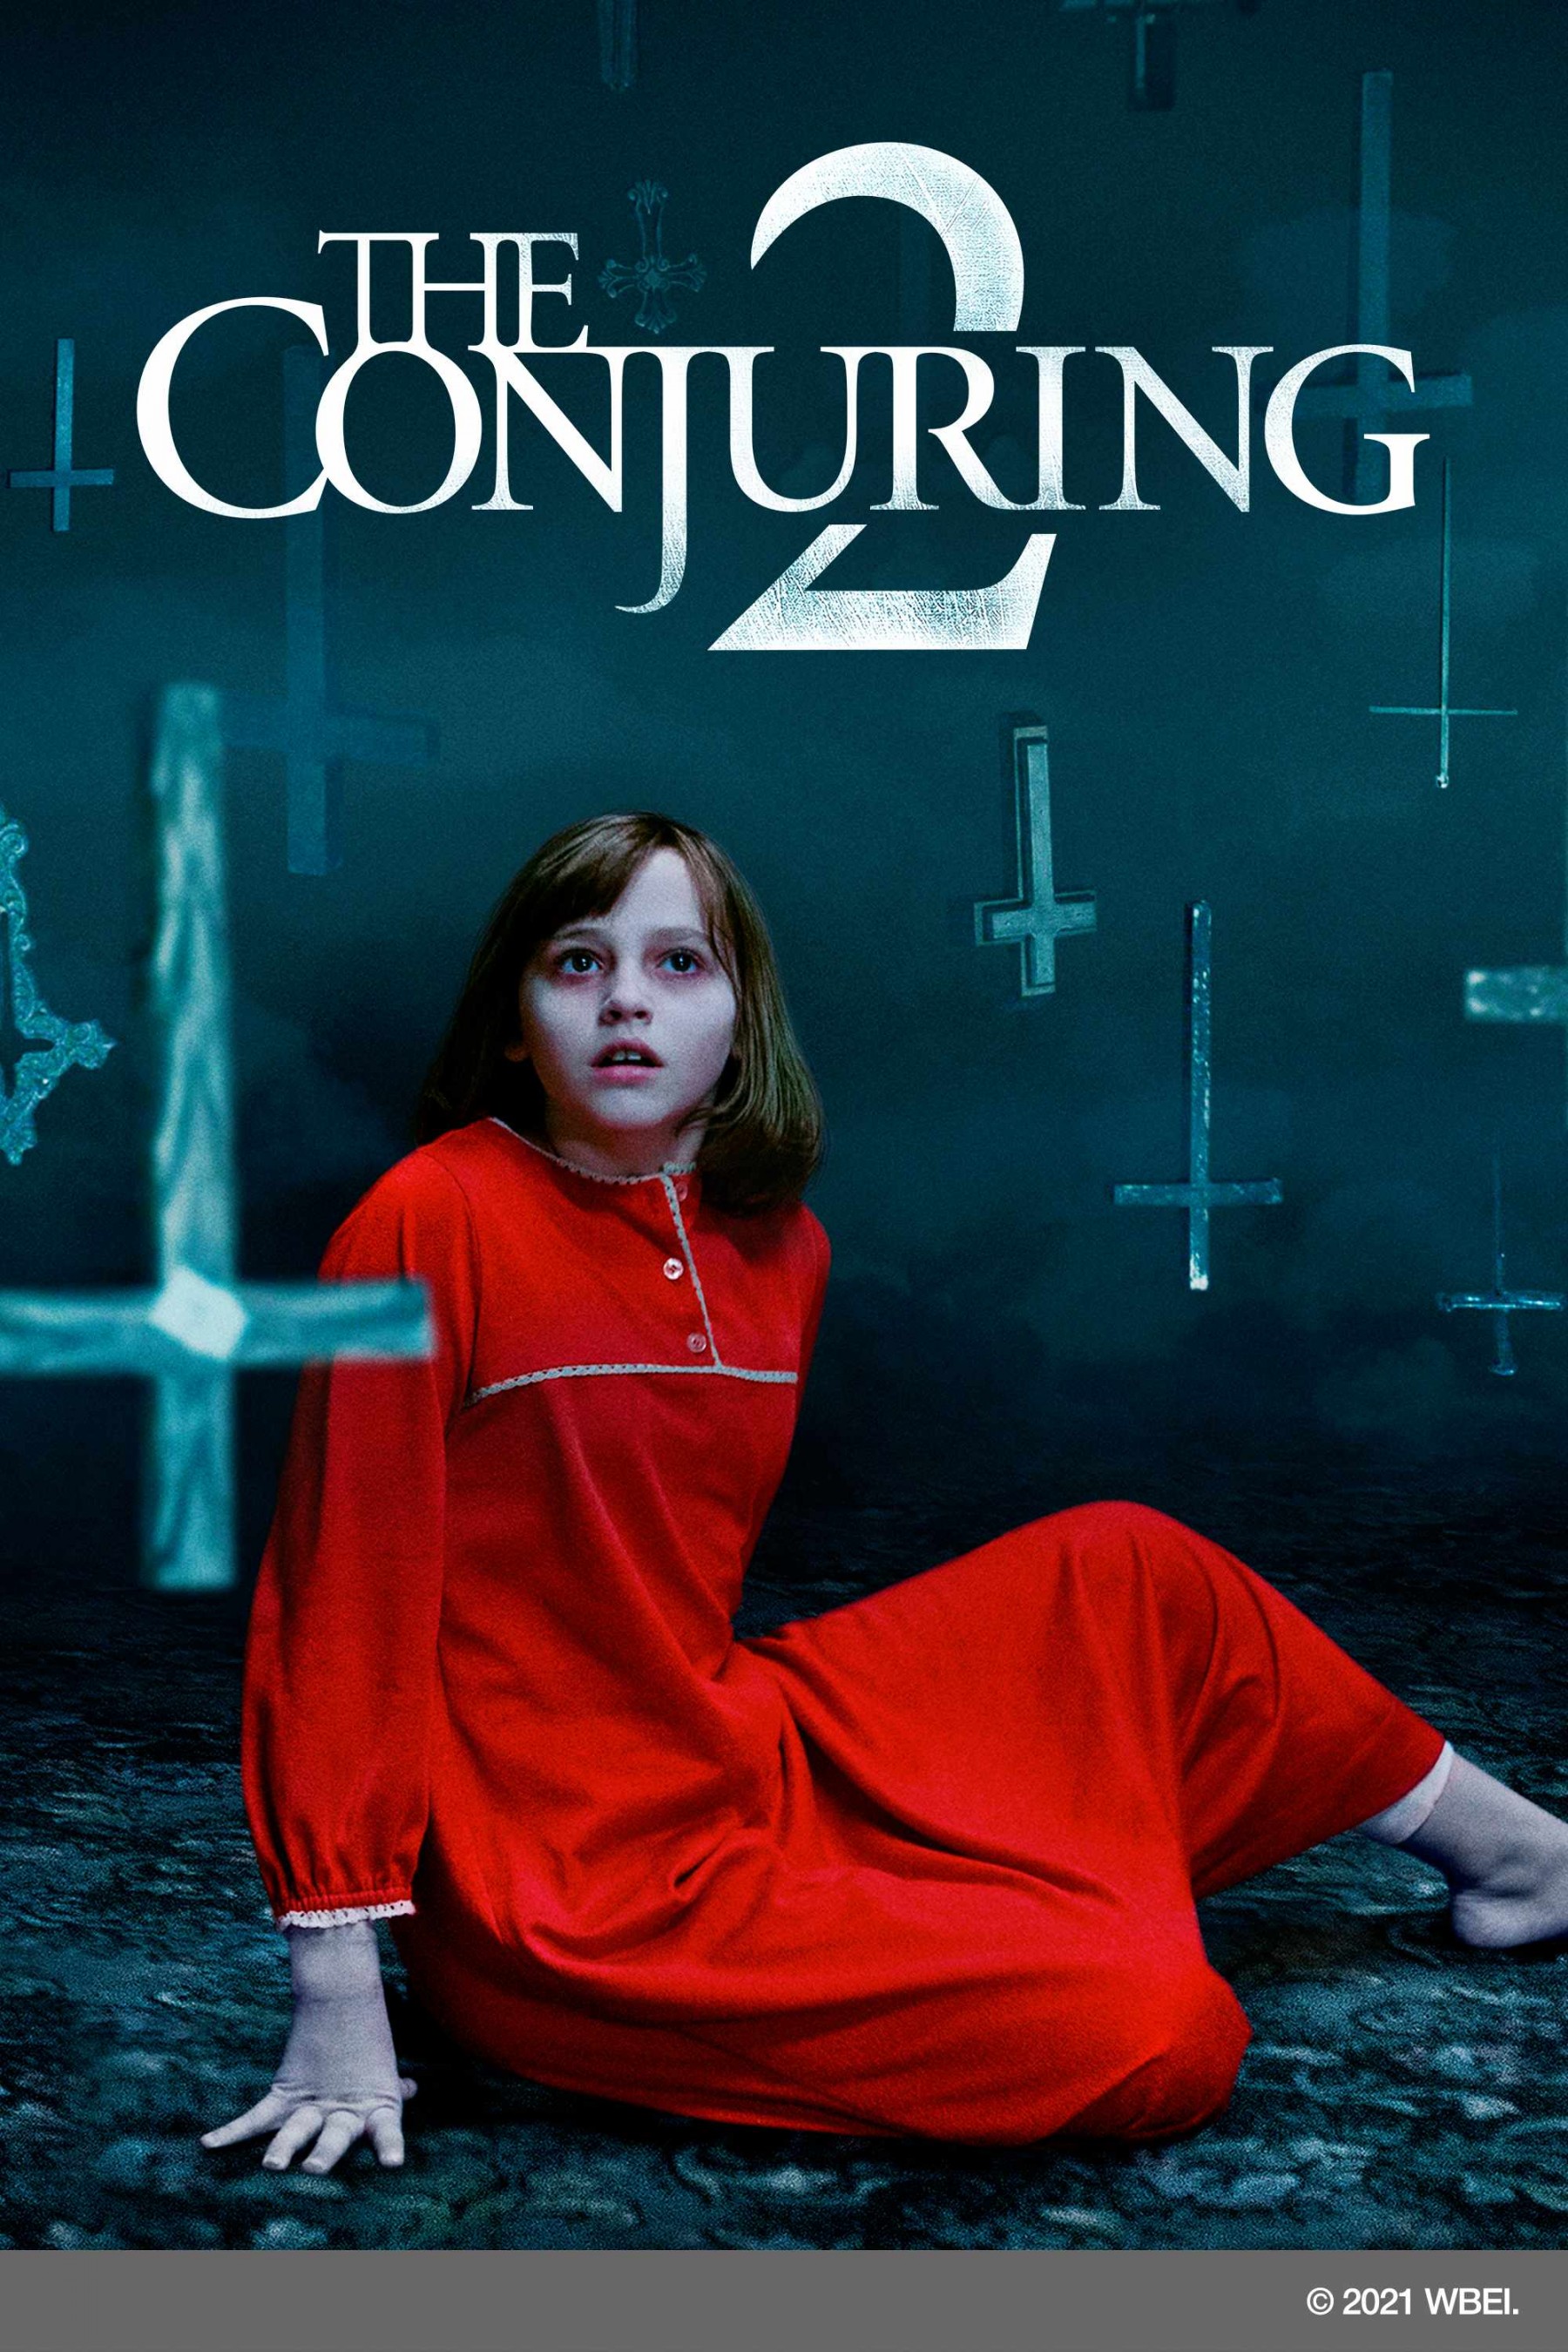 Ám Ảnh Kinh Hoàng 2 - The Conjuring 2 2022 | Thông Tin - Lịch Chiếu | Cgv